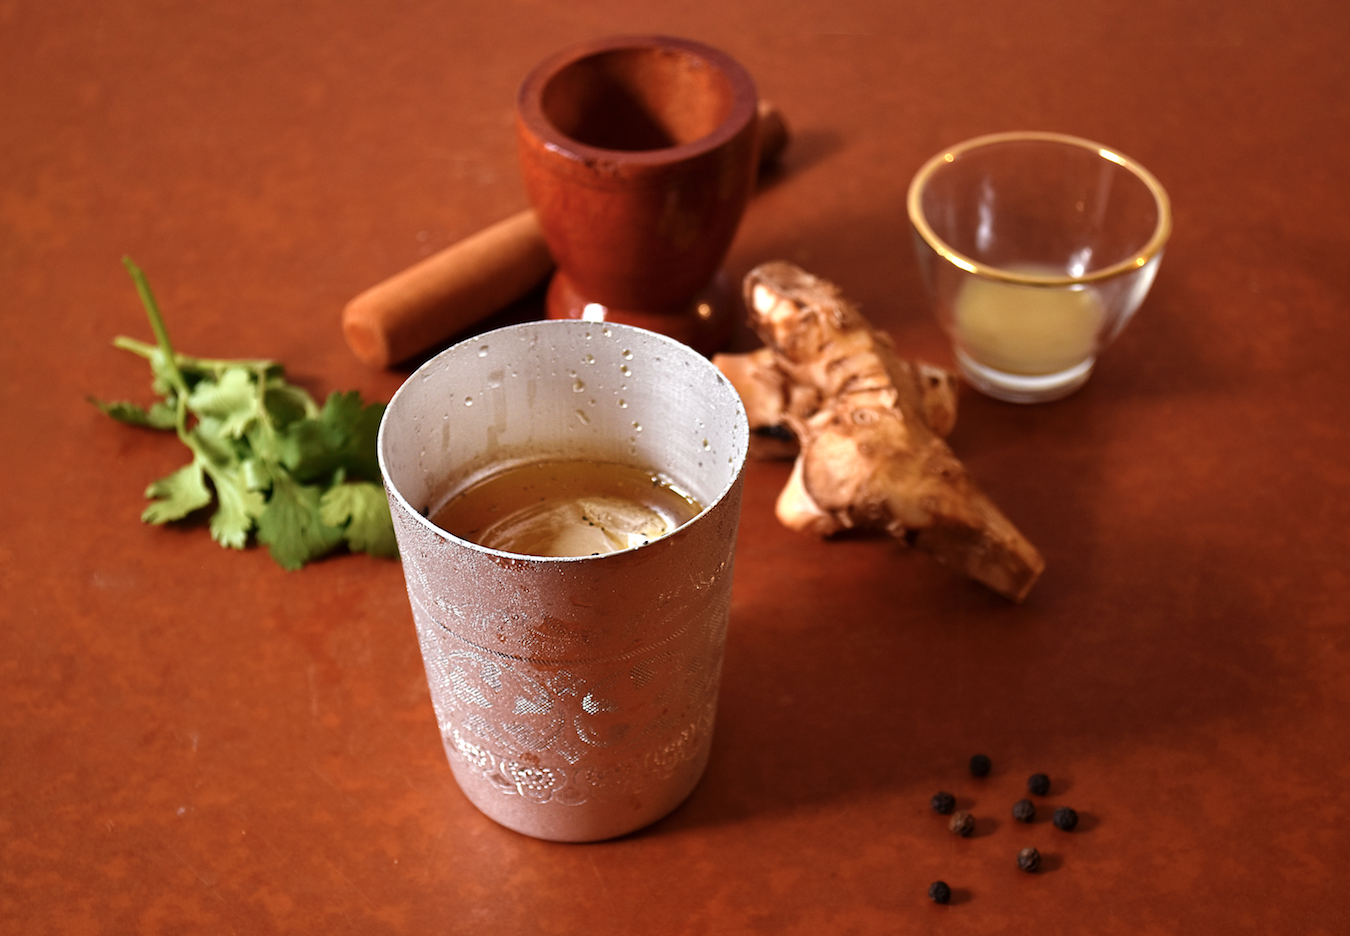 【簡単アレンジレシピ】無農薬クラフトラム酒でエスニックを楽しみませんか